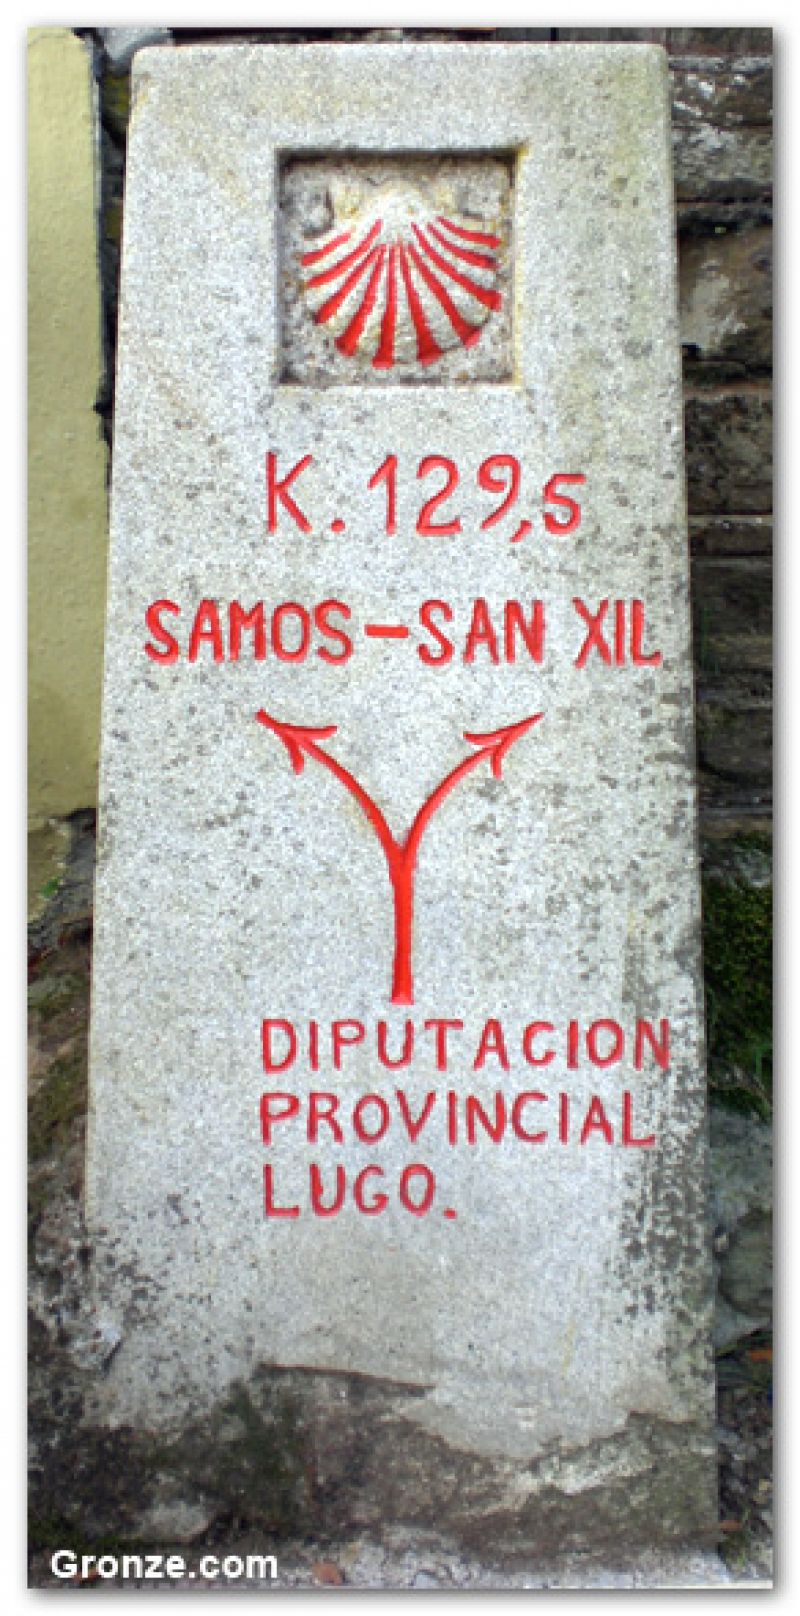 ¿Monasterio de Samos o Valle de San Xil?